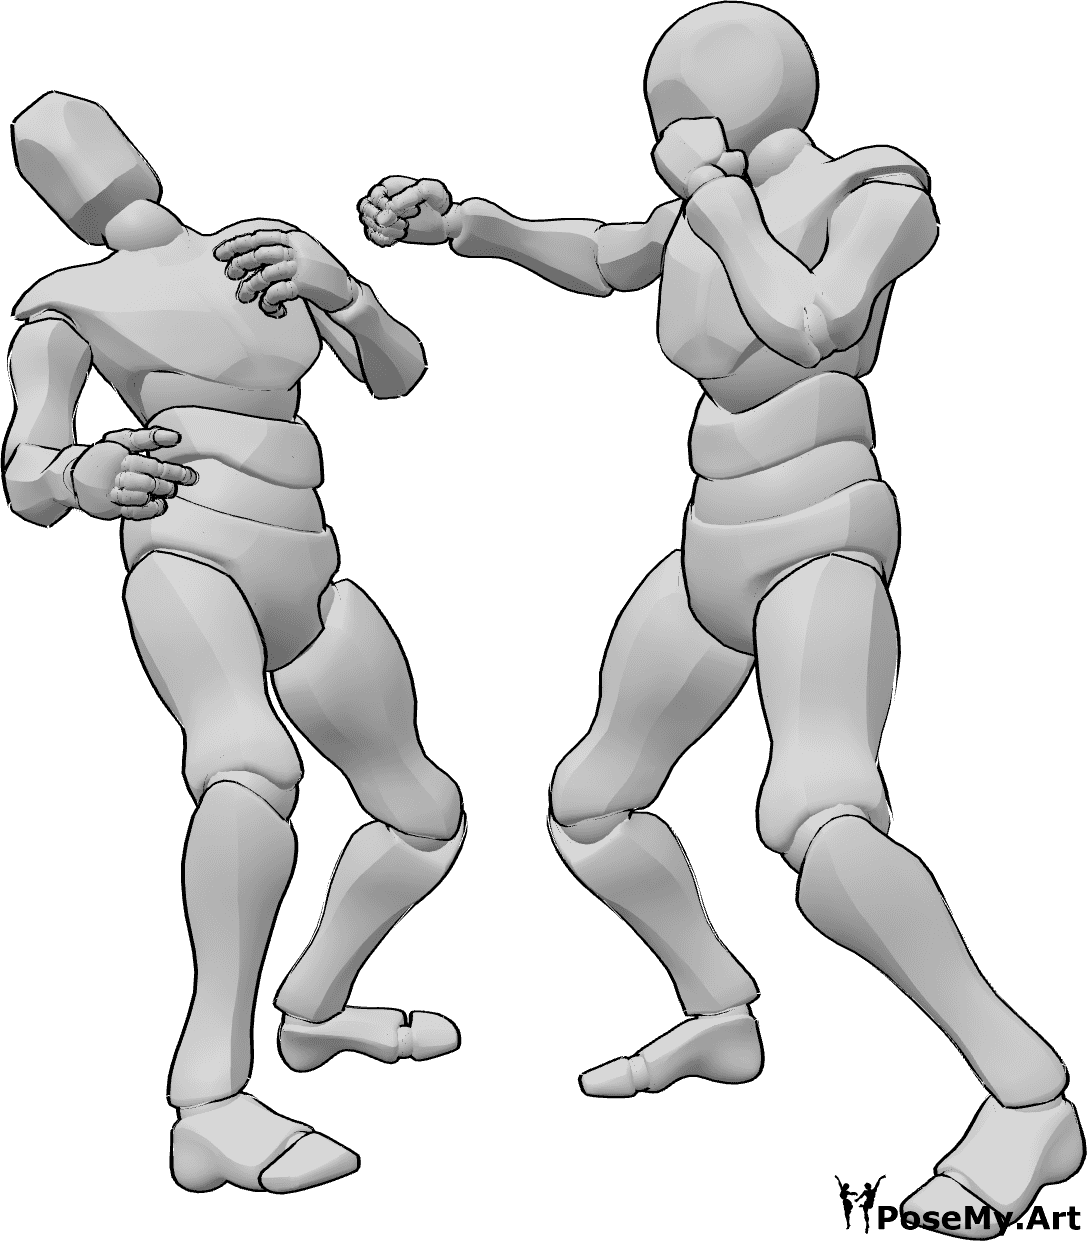 Referencia de poses- Postura de noqueo - Dos hombres boxean, uno de ellos noquea a su oponente con un gancho de derecha.